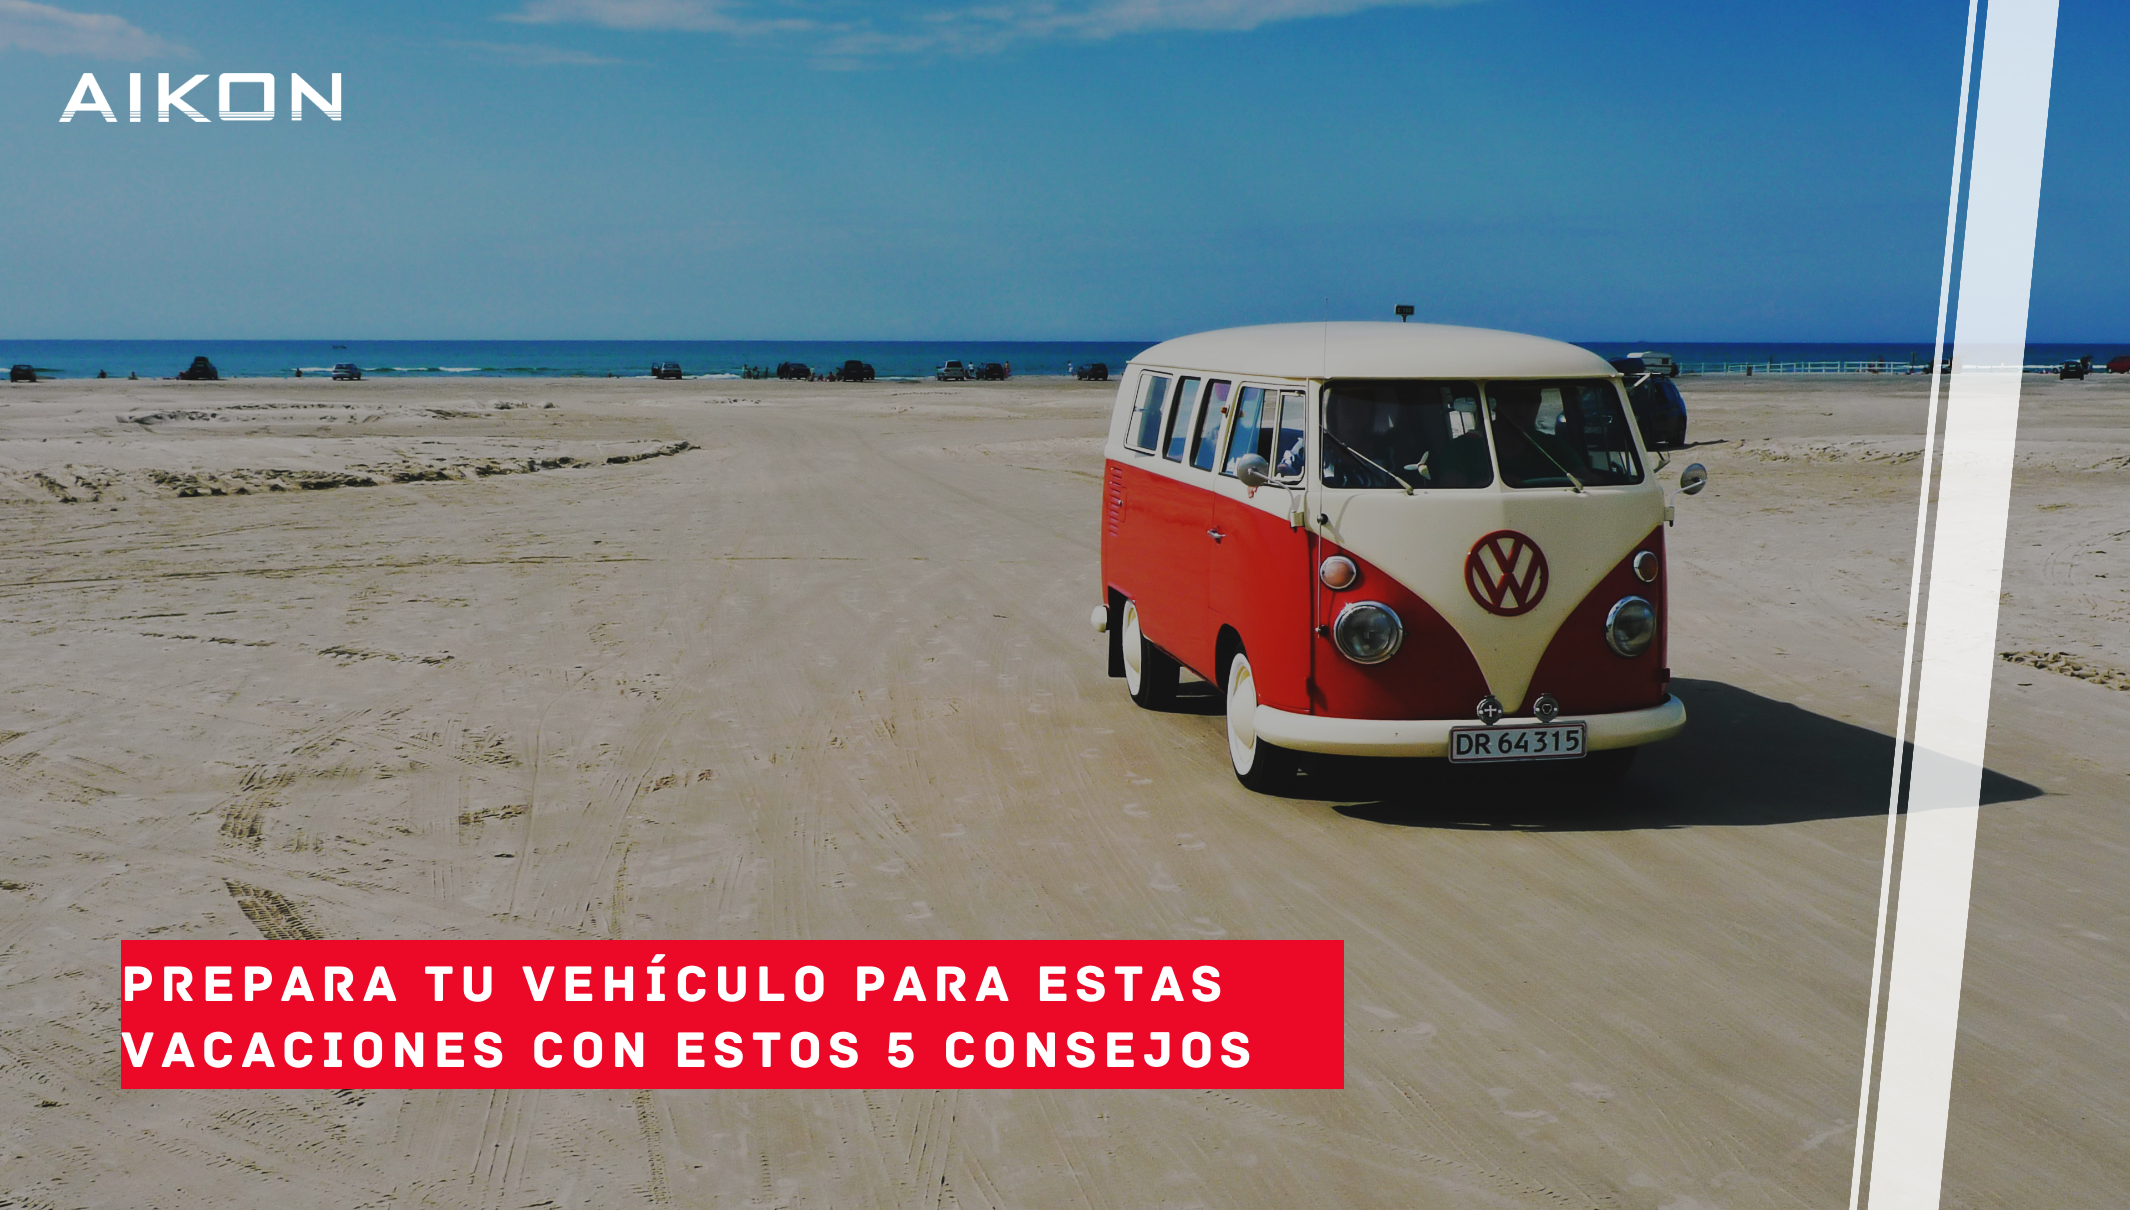 Featured image for “Prepara tu vehículo para estas vacaciones”